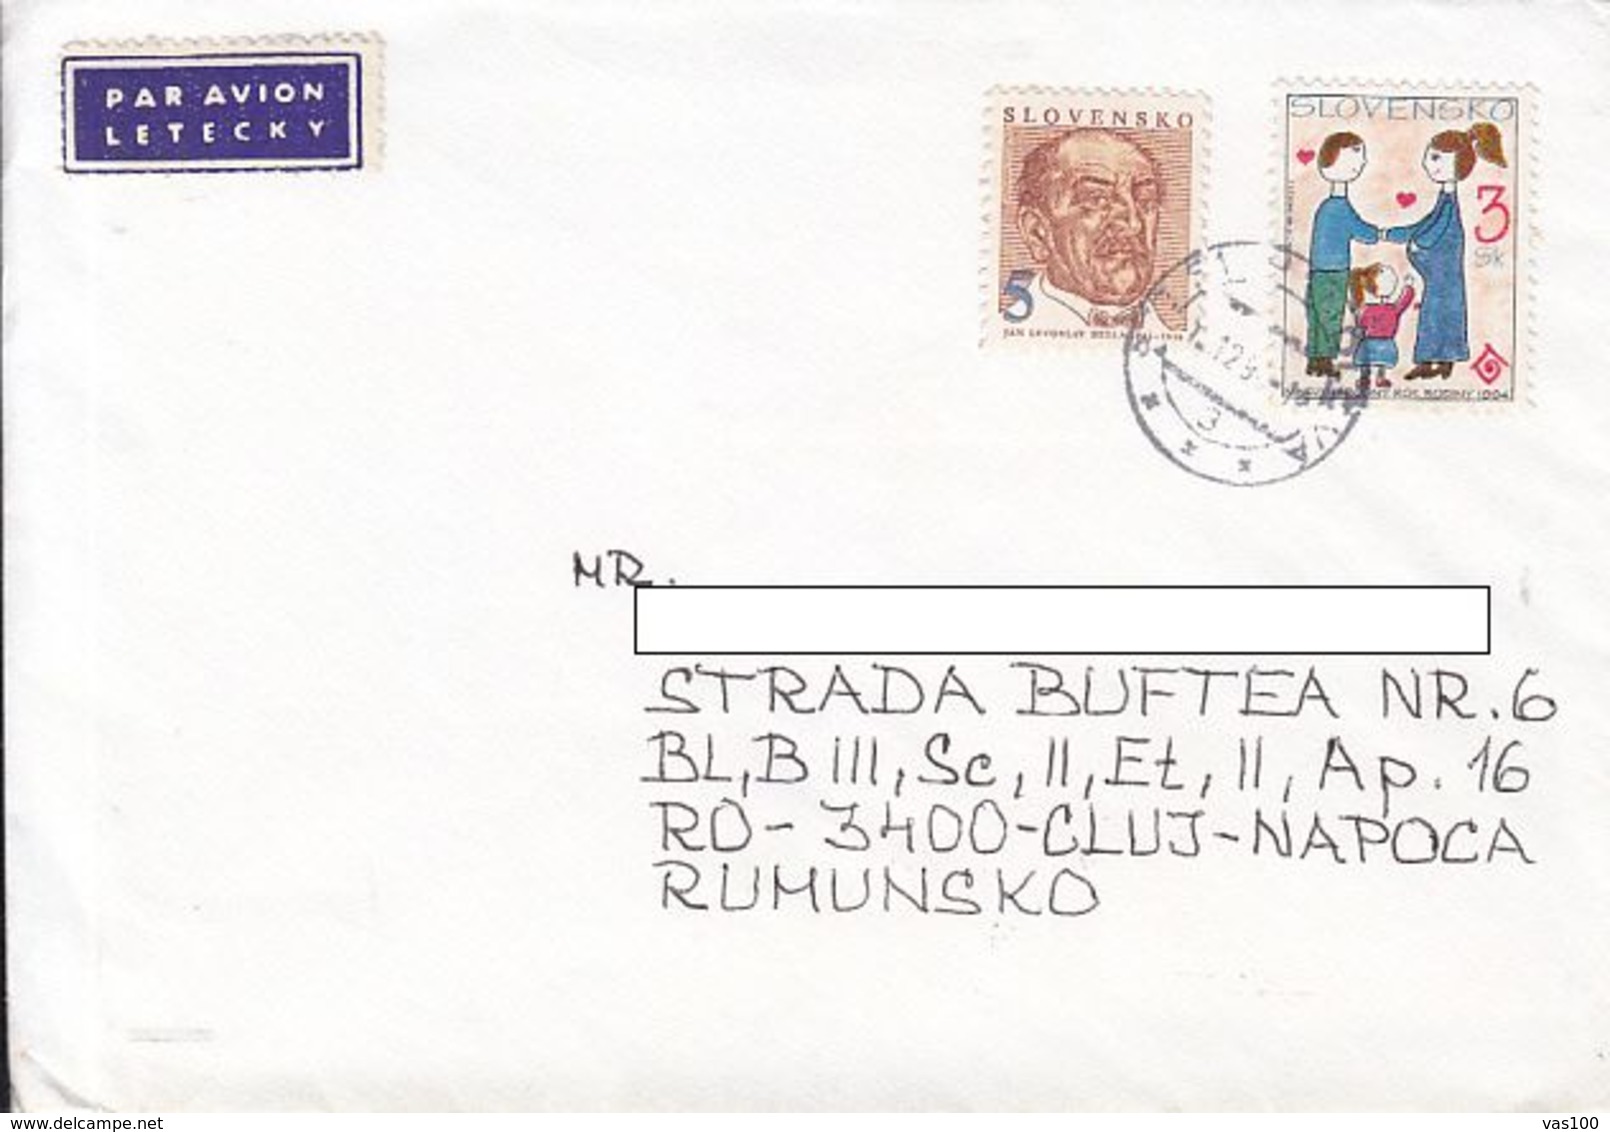 JAN LEVOSLAV BELLA, FAMILY, STAMPS ON COVER, 1995, SLOVAKIA - Storia Postale